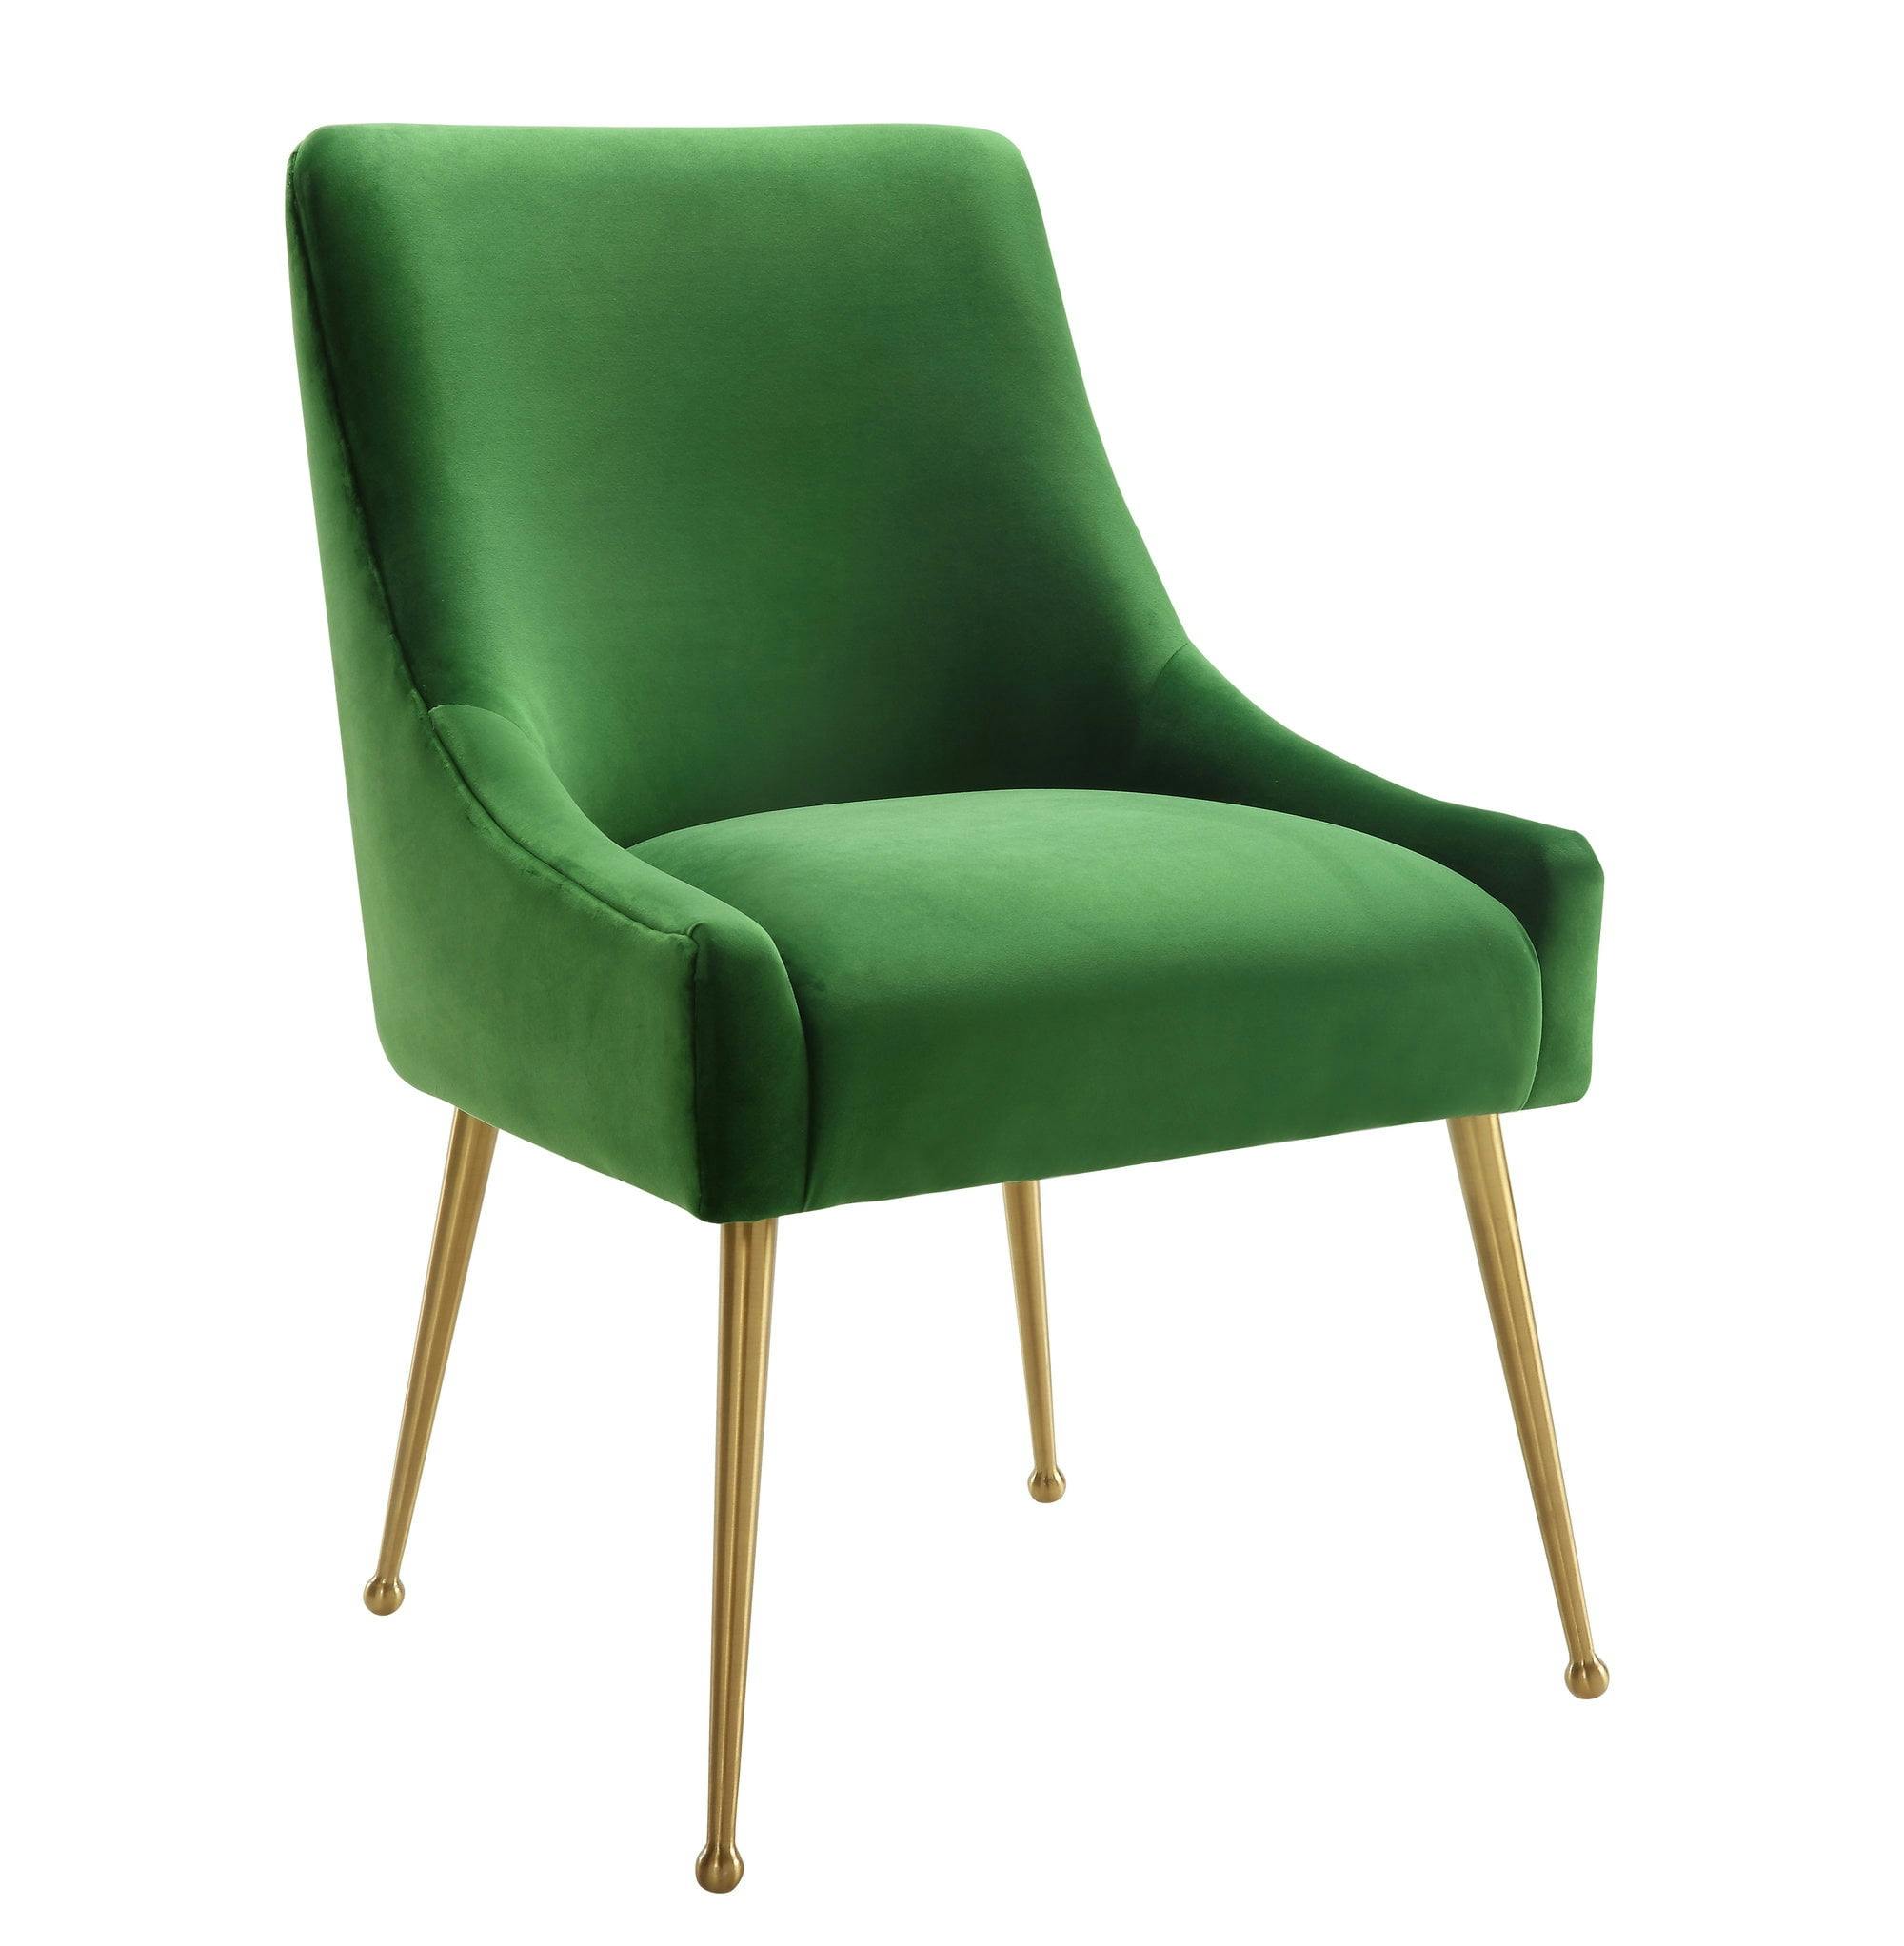 Elegant Green Velvet Upholstered Side Chair with Gold Metal Legs